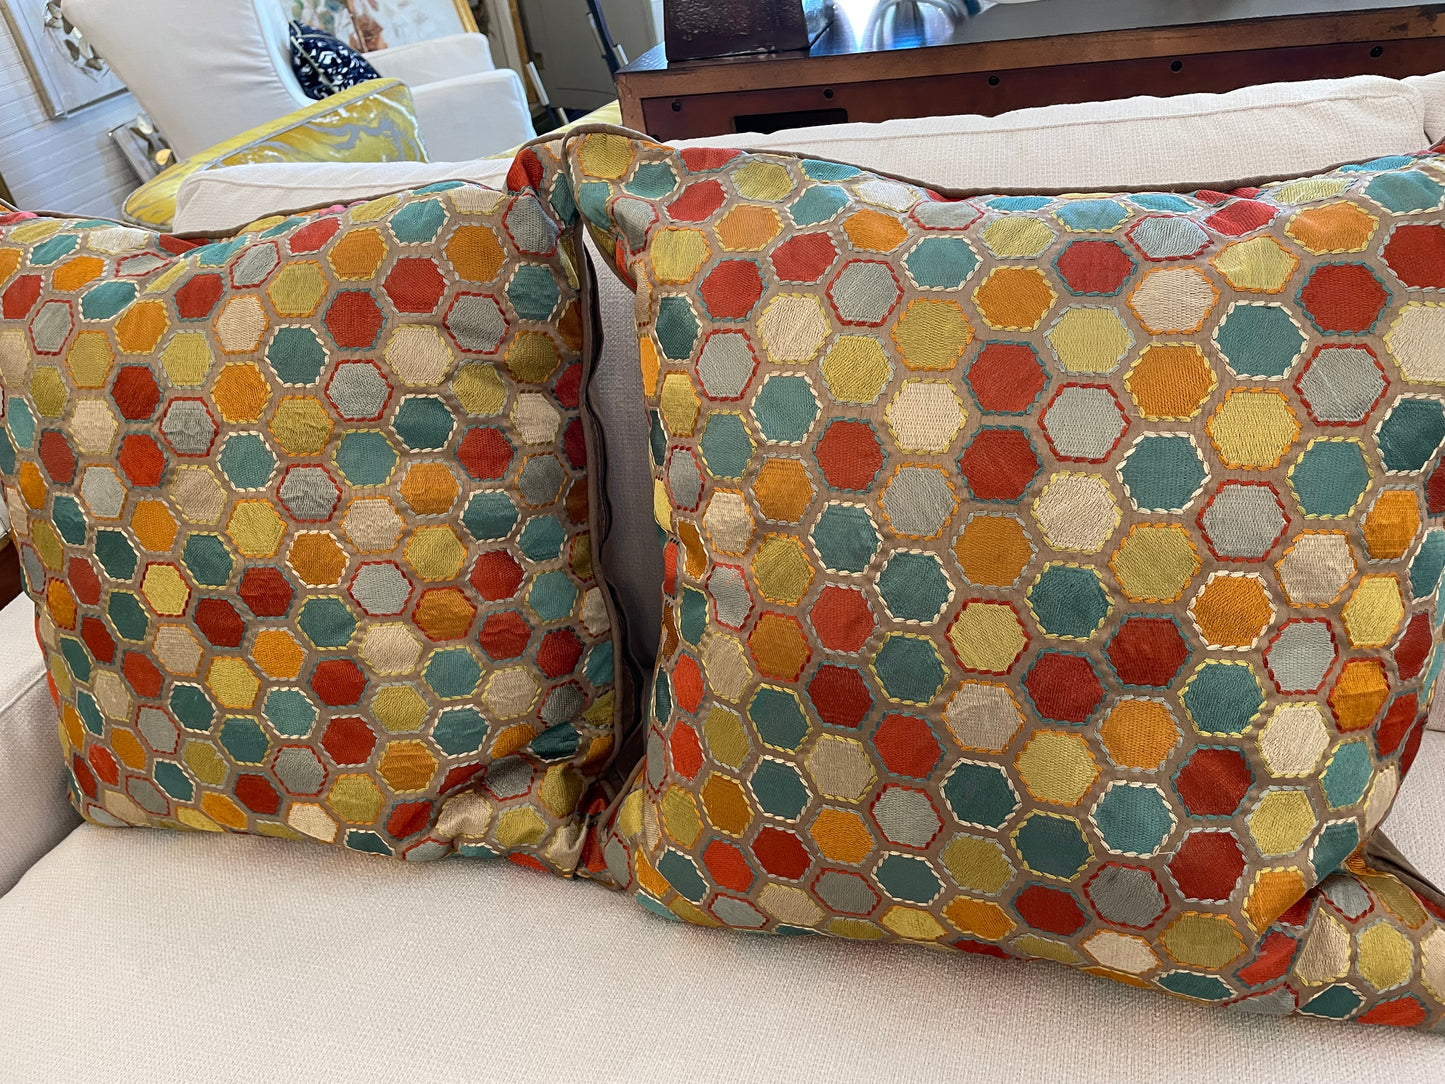 Hexagon Pattern Pillow